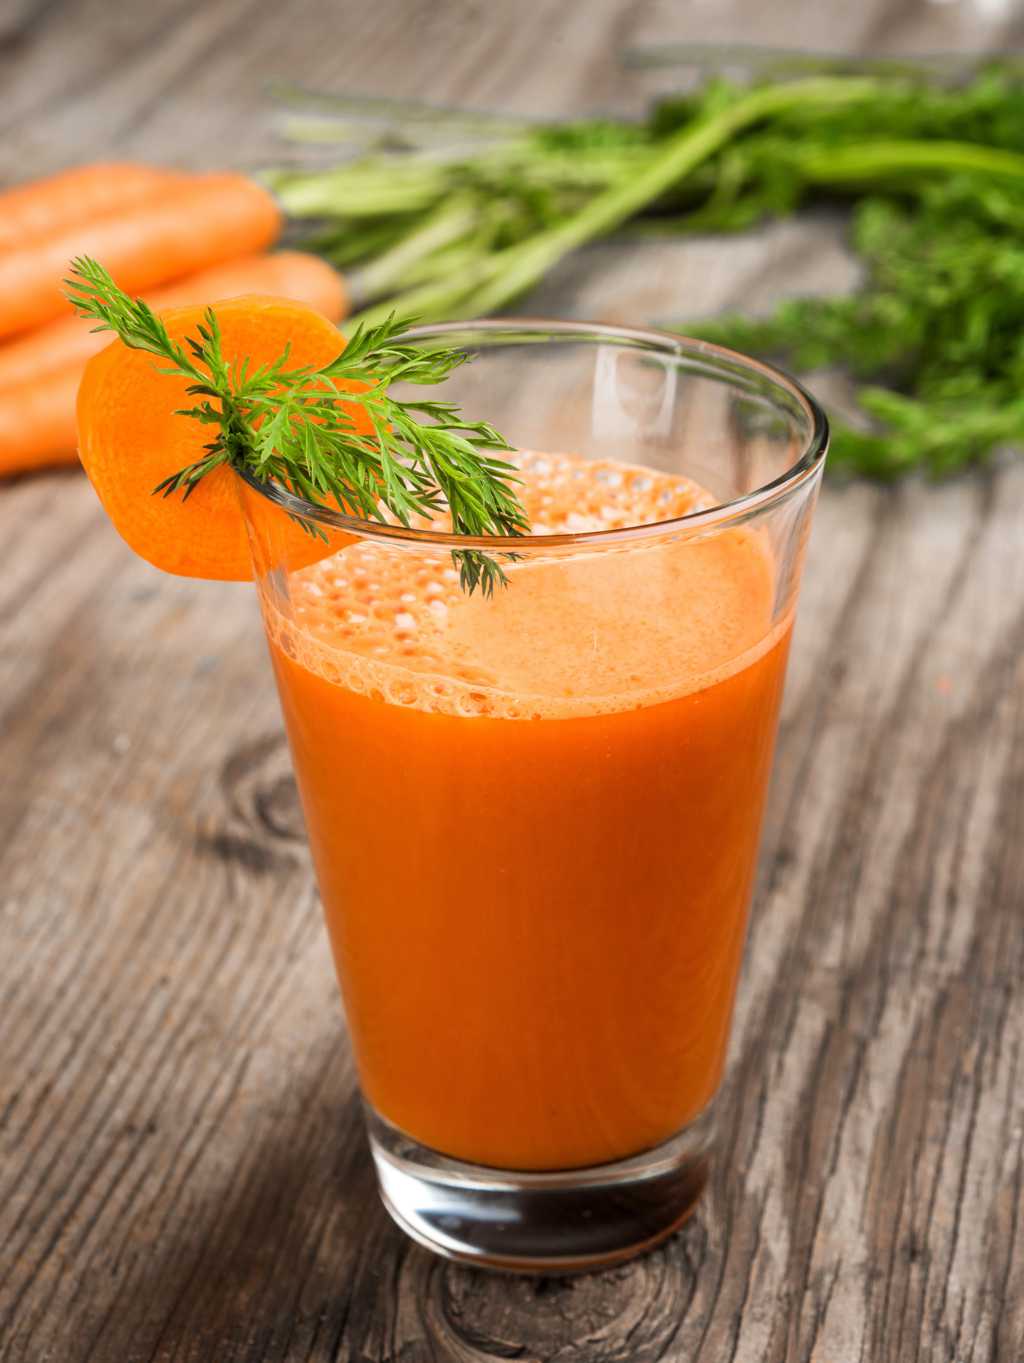 健康的胡萝卜汁图片